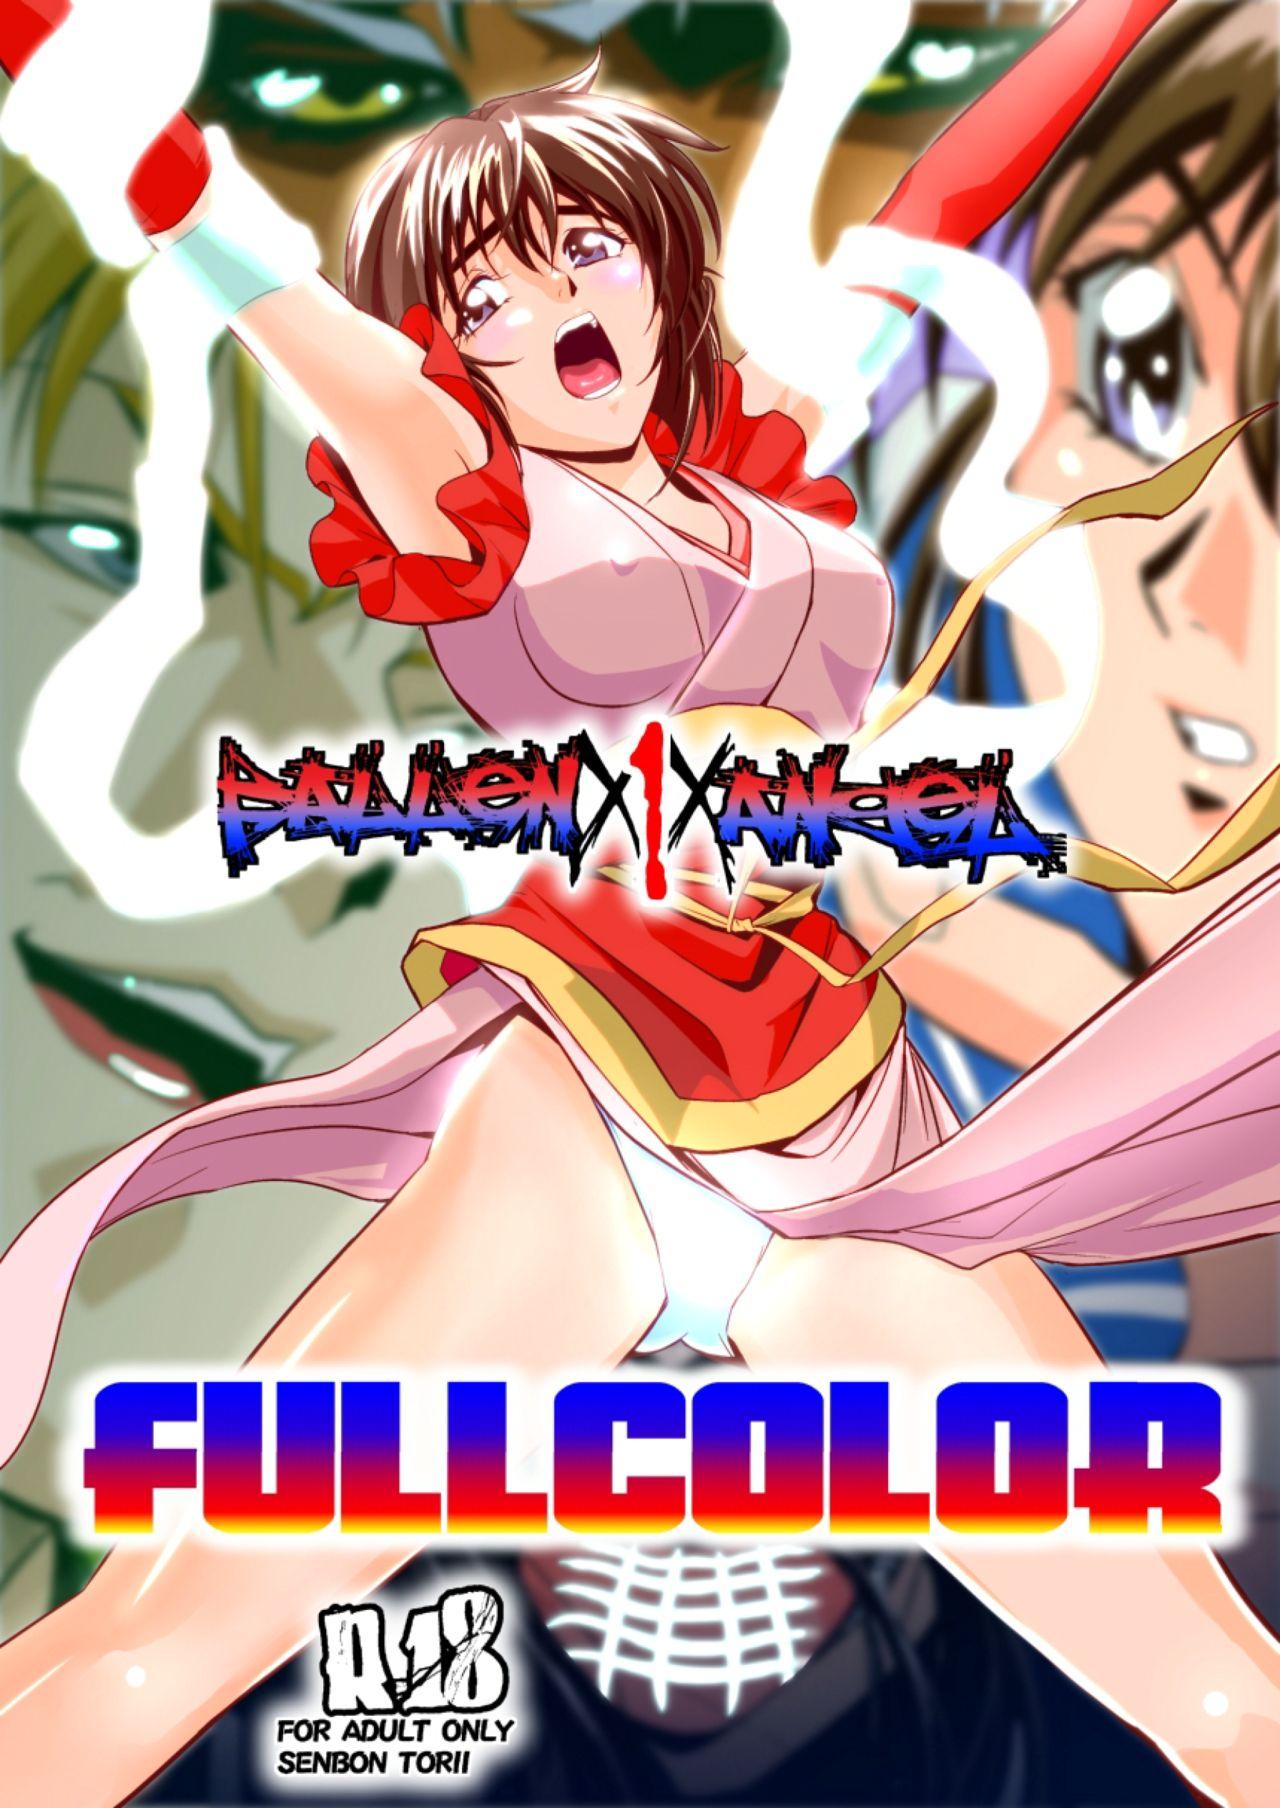 FallenXXangeL1 Ingyaku no Mai Joukan Full Color 0